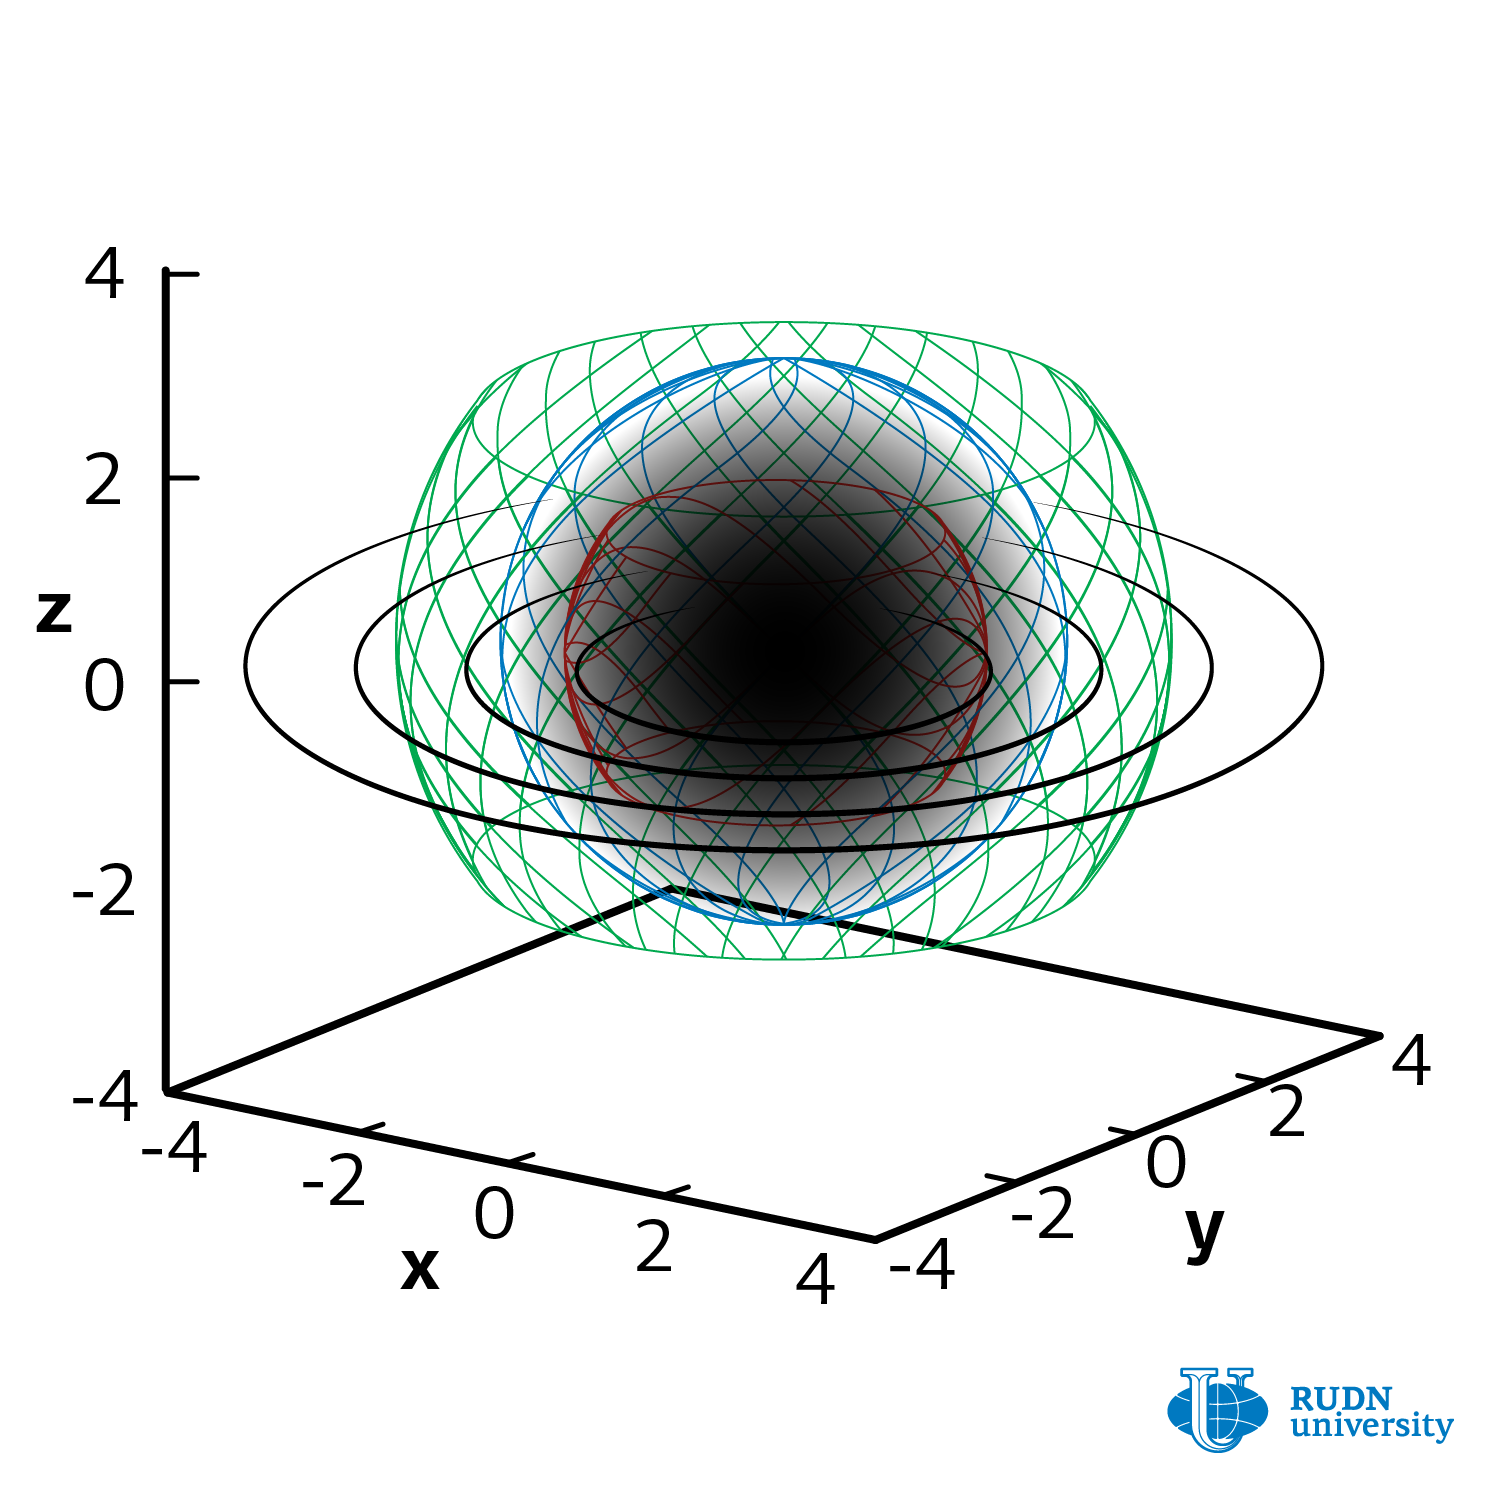 Ilustración del modelo del agujero negro examinado en esta investigación. RUDN.